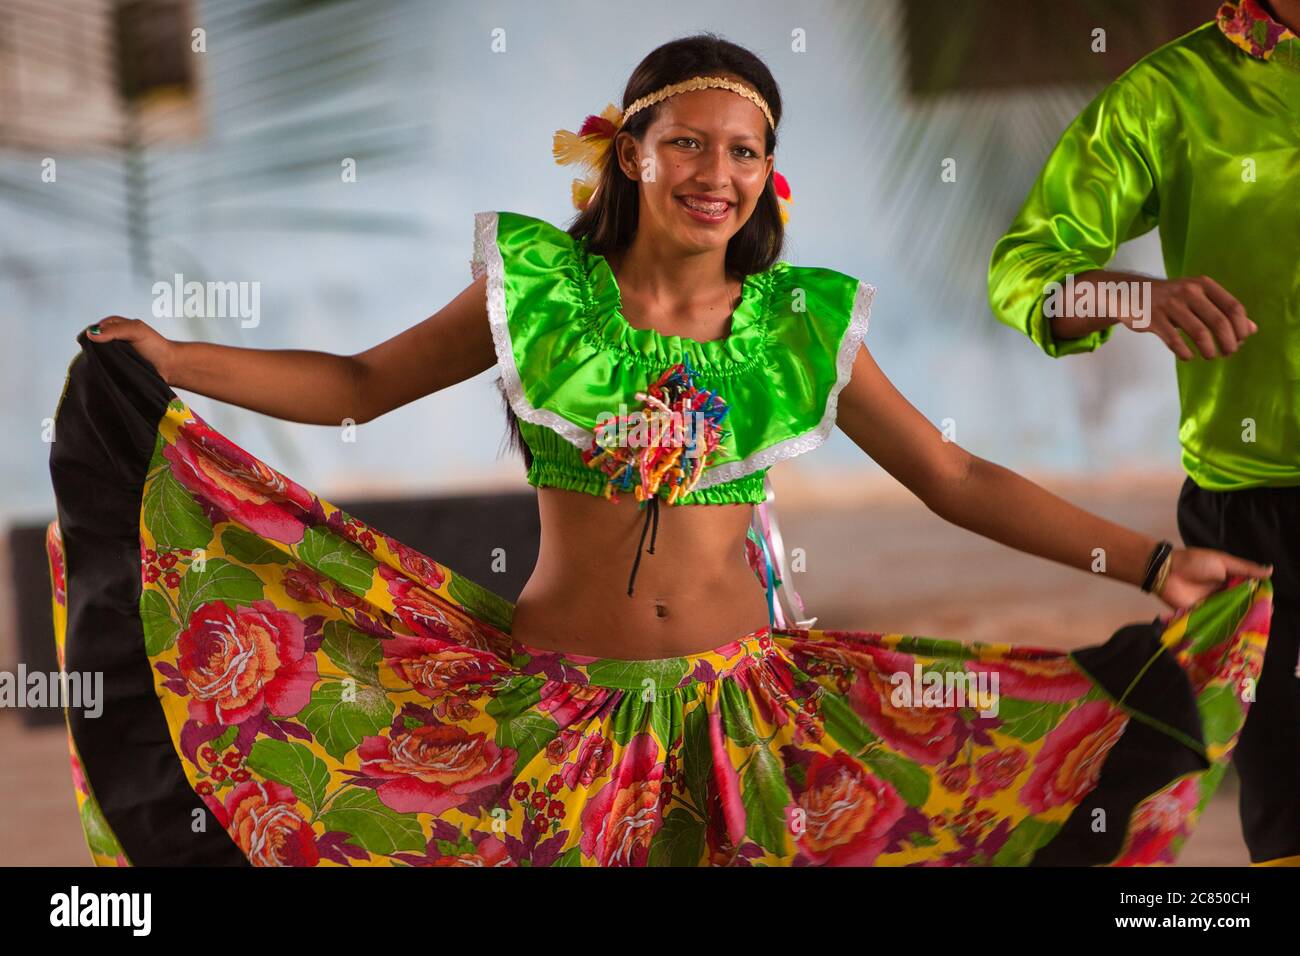 La variopinta danzatrice popolare ragazza tiene fuori le pieghe del suo vestito esotico durante una esposizione locale di ballo in Alter do Chao, Stato di Para, Brasile Foto Stock